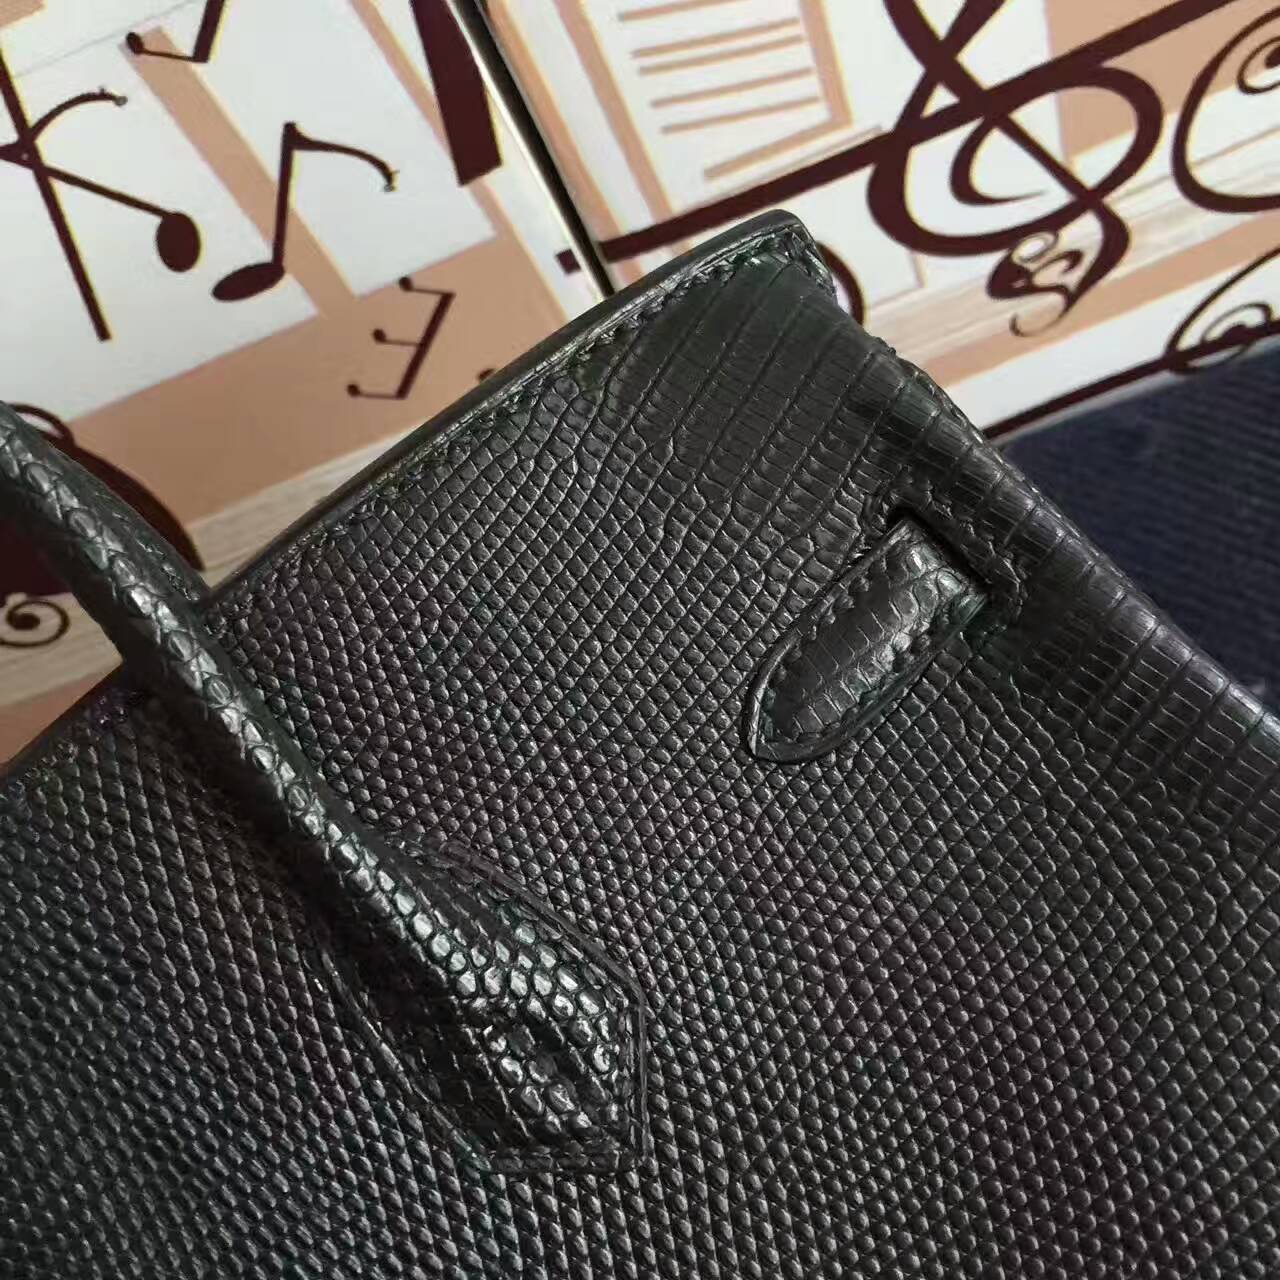 Cheap Hermes CK89 Black Lizard Shiny Leather  Birkin Bag 25cm